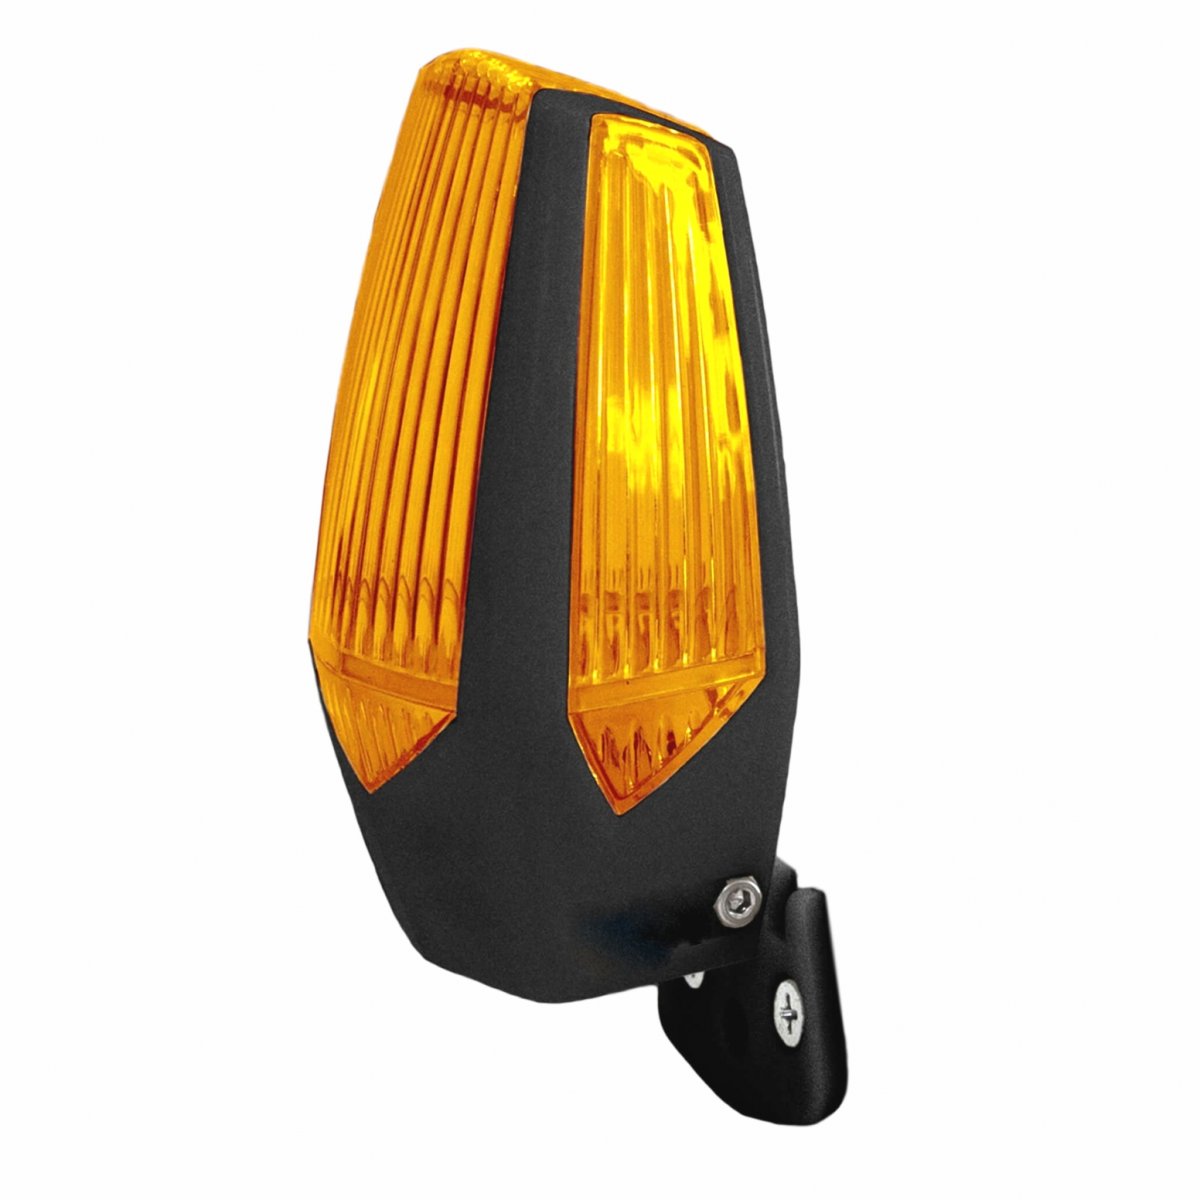 LED-Blinkleuchte MP-205 gelb - passend zu allen Motorst